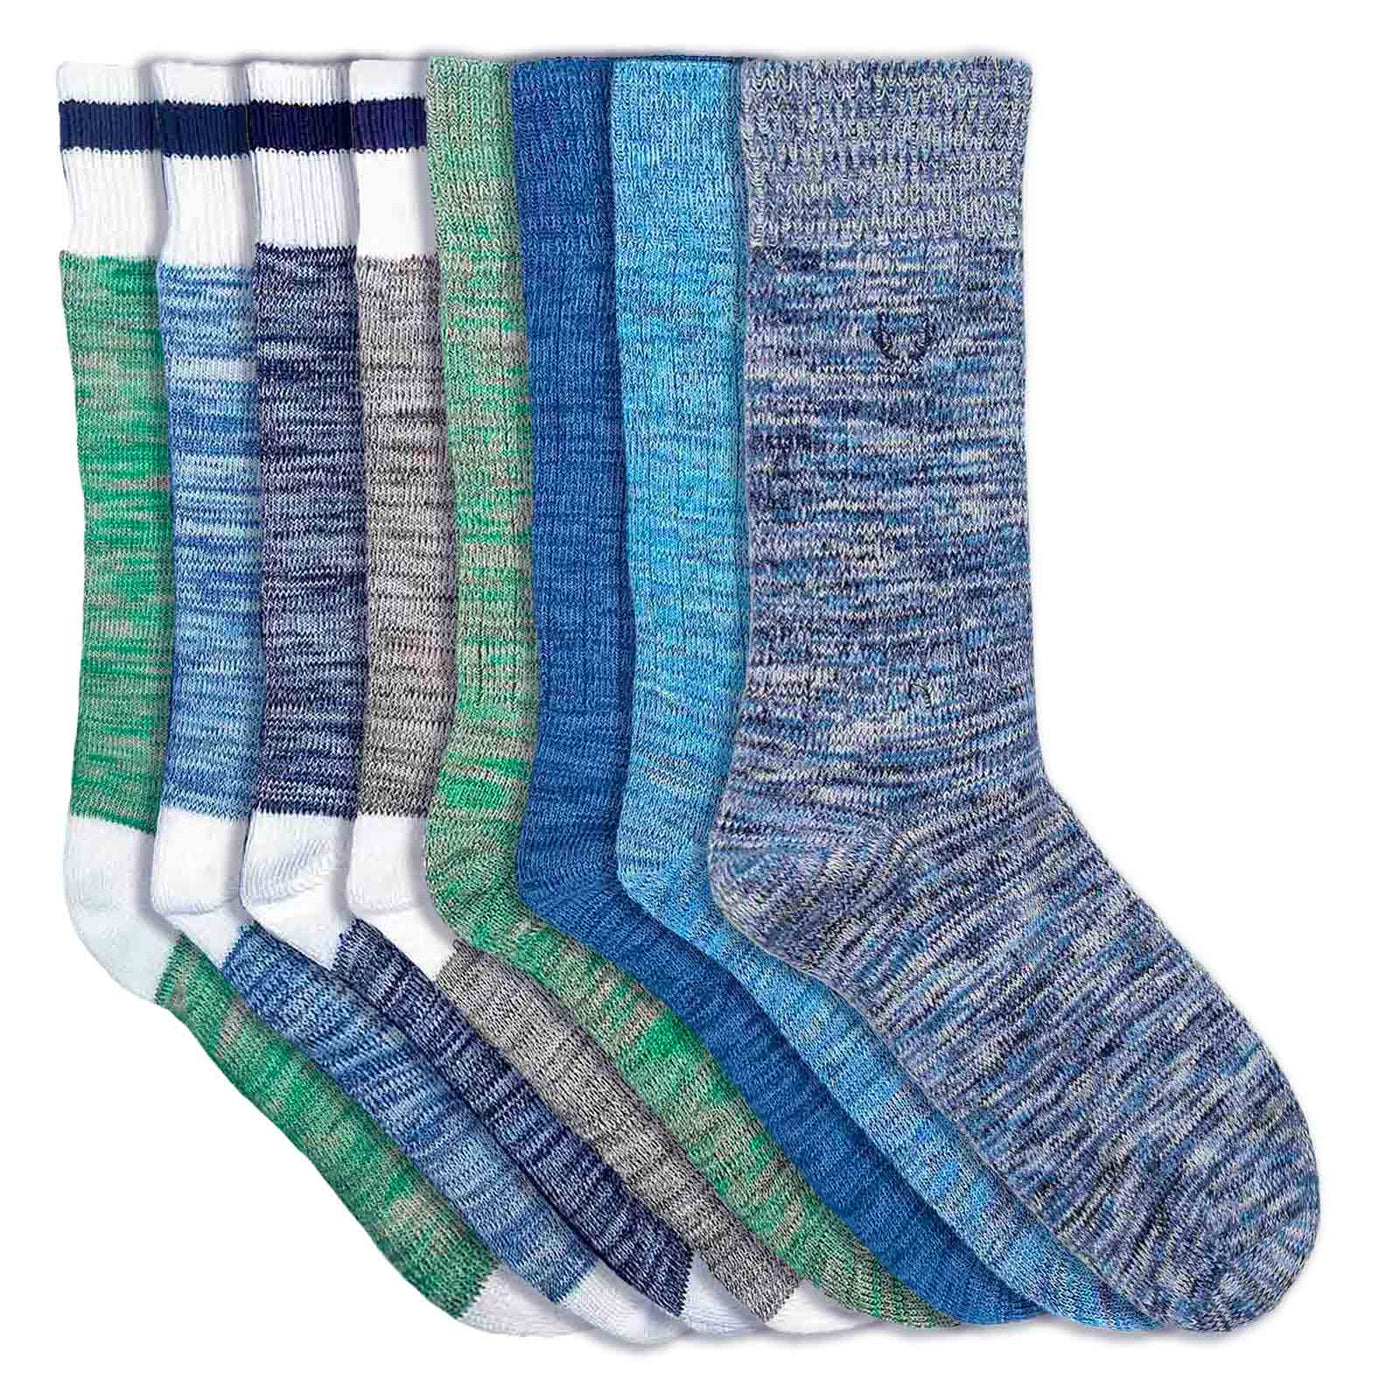 8 paires de chaussettes homme en coton bio bleu ou vert chiné